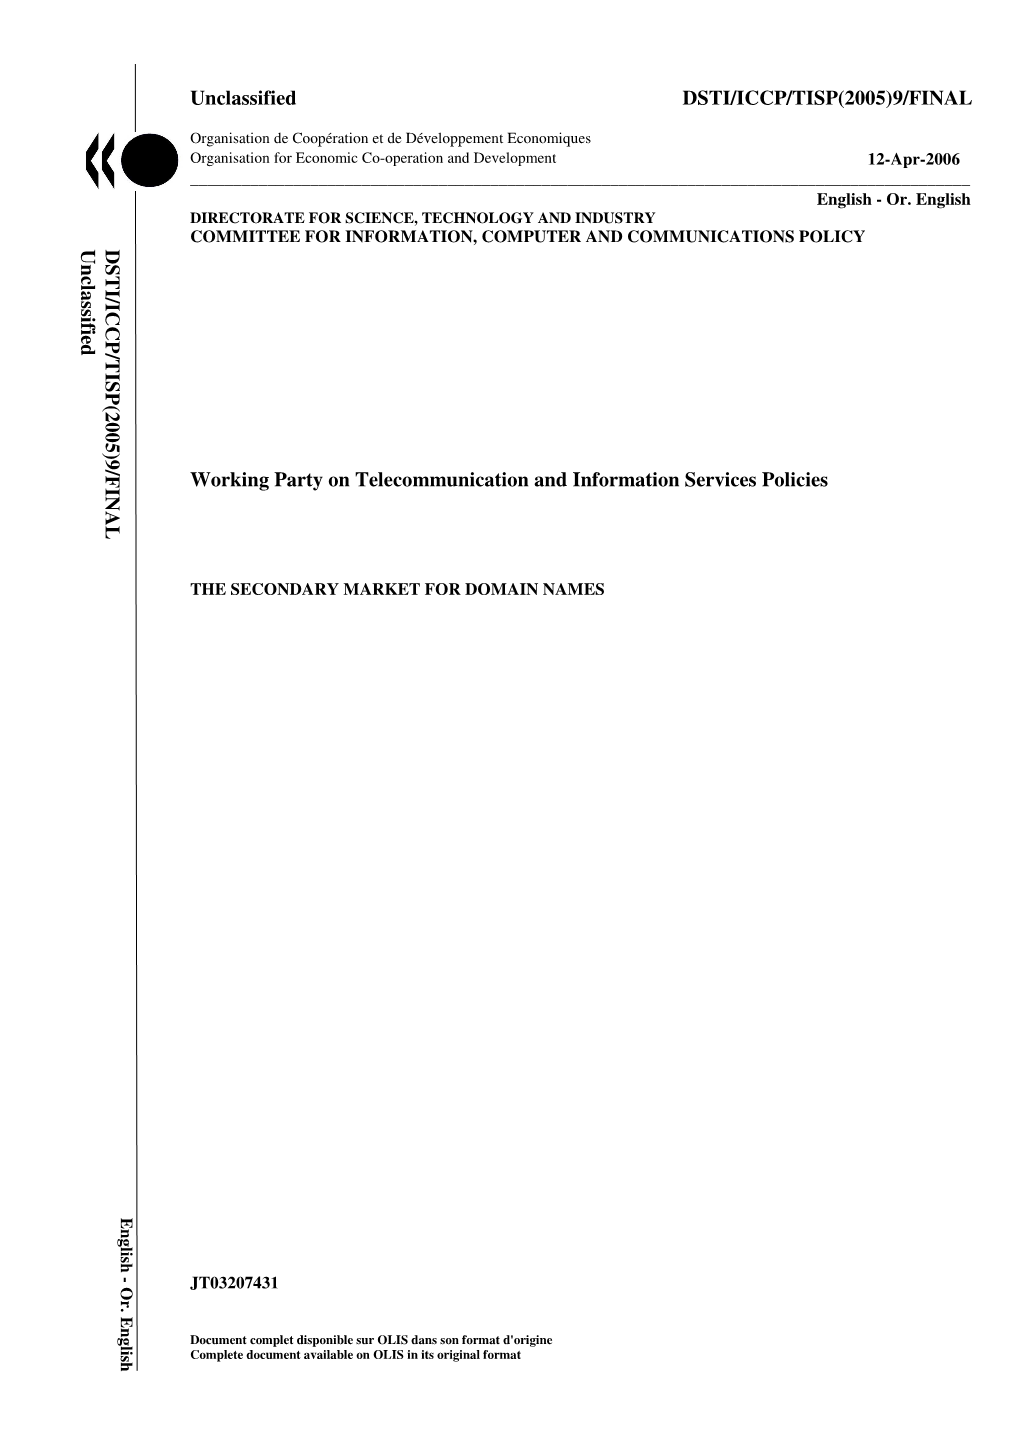 Unclassified DSTI/ICCP/TISP(2005)9/FINAL